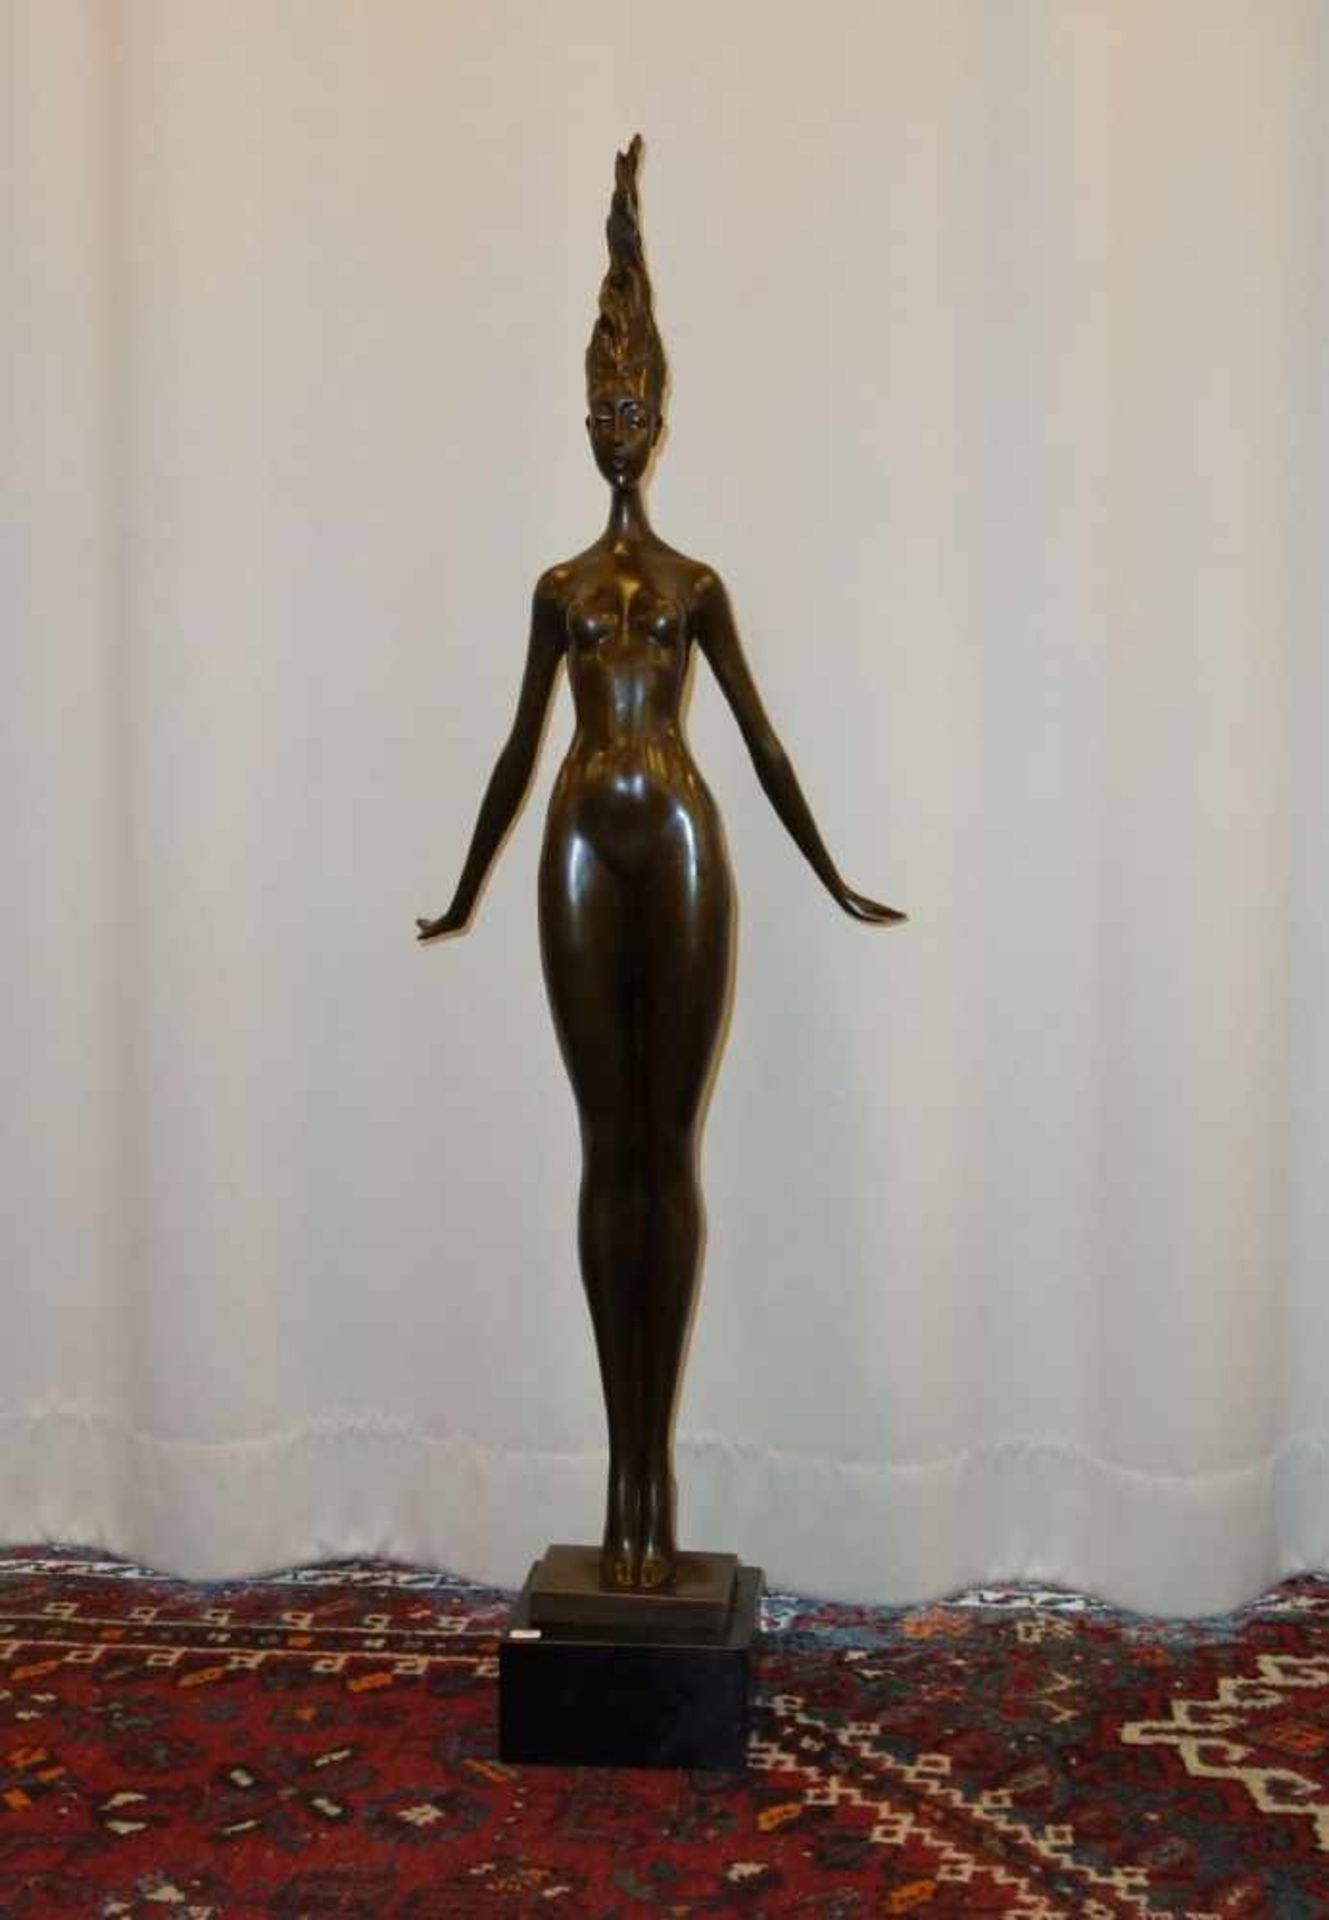 ALIOTH, J. P. (20./21. Jh.), Skulptur / sculpture: "Daphne", Bronze, hellbraun patiniert, auf der